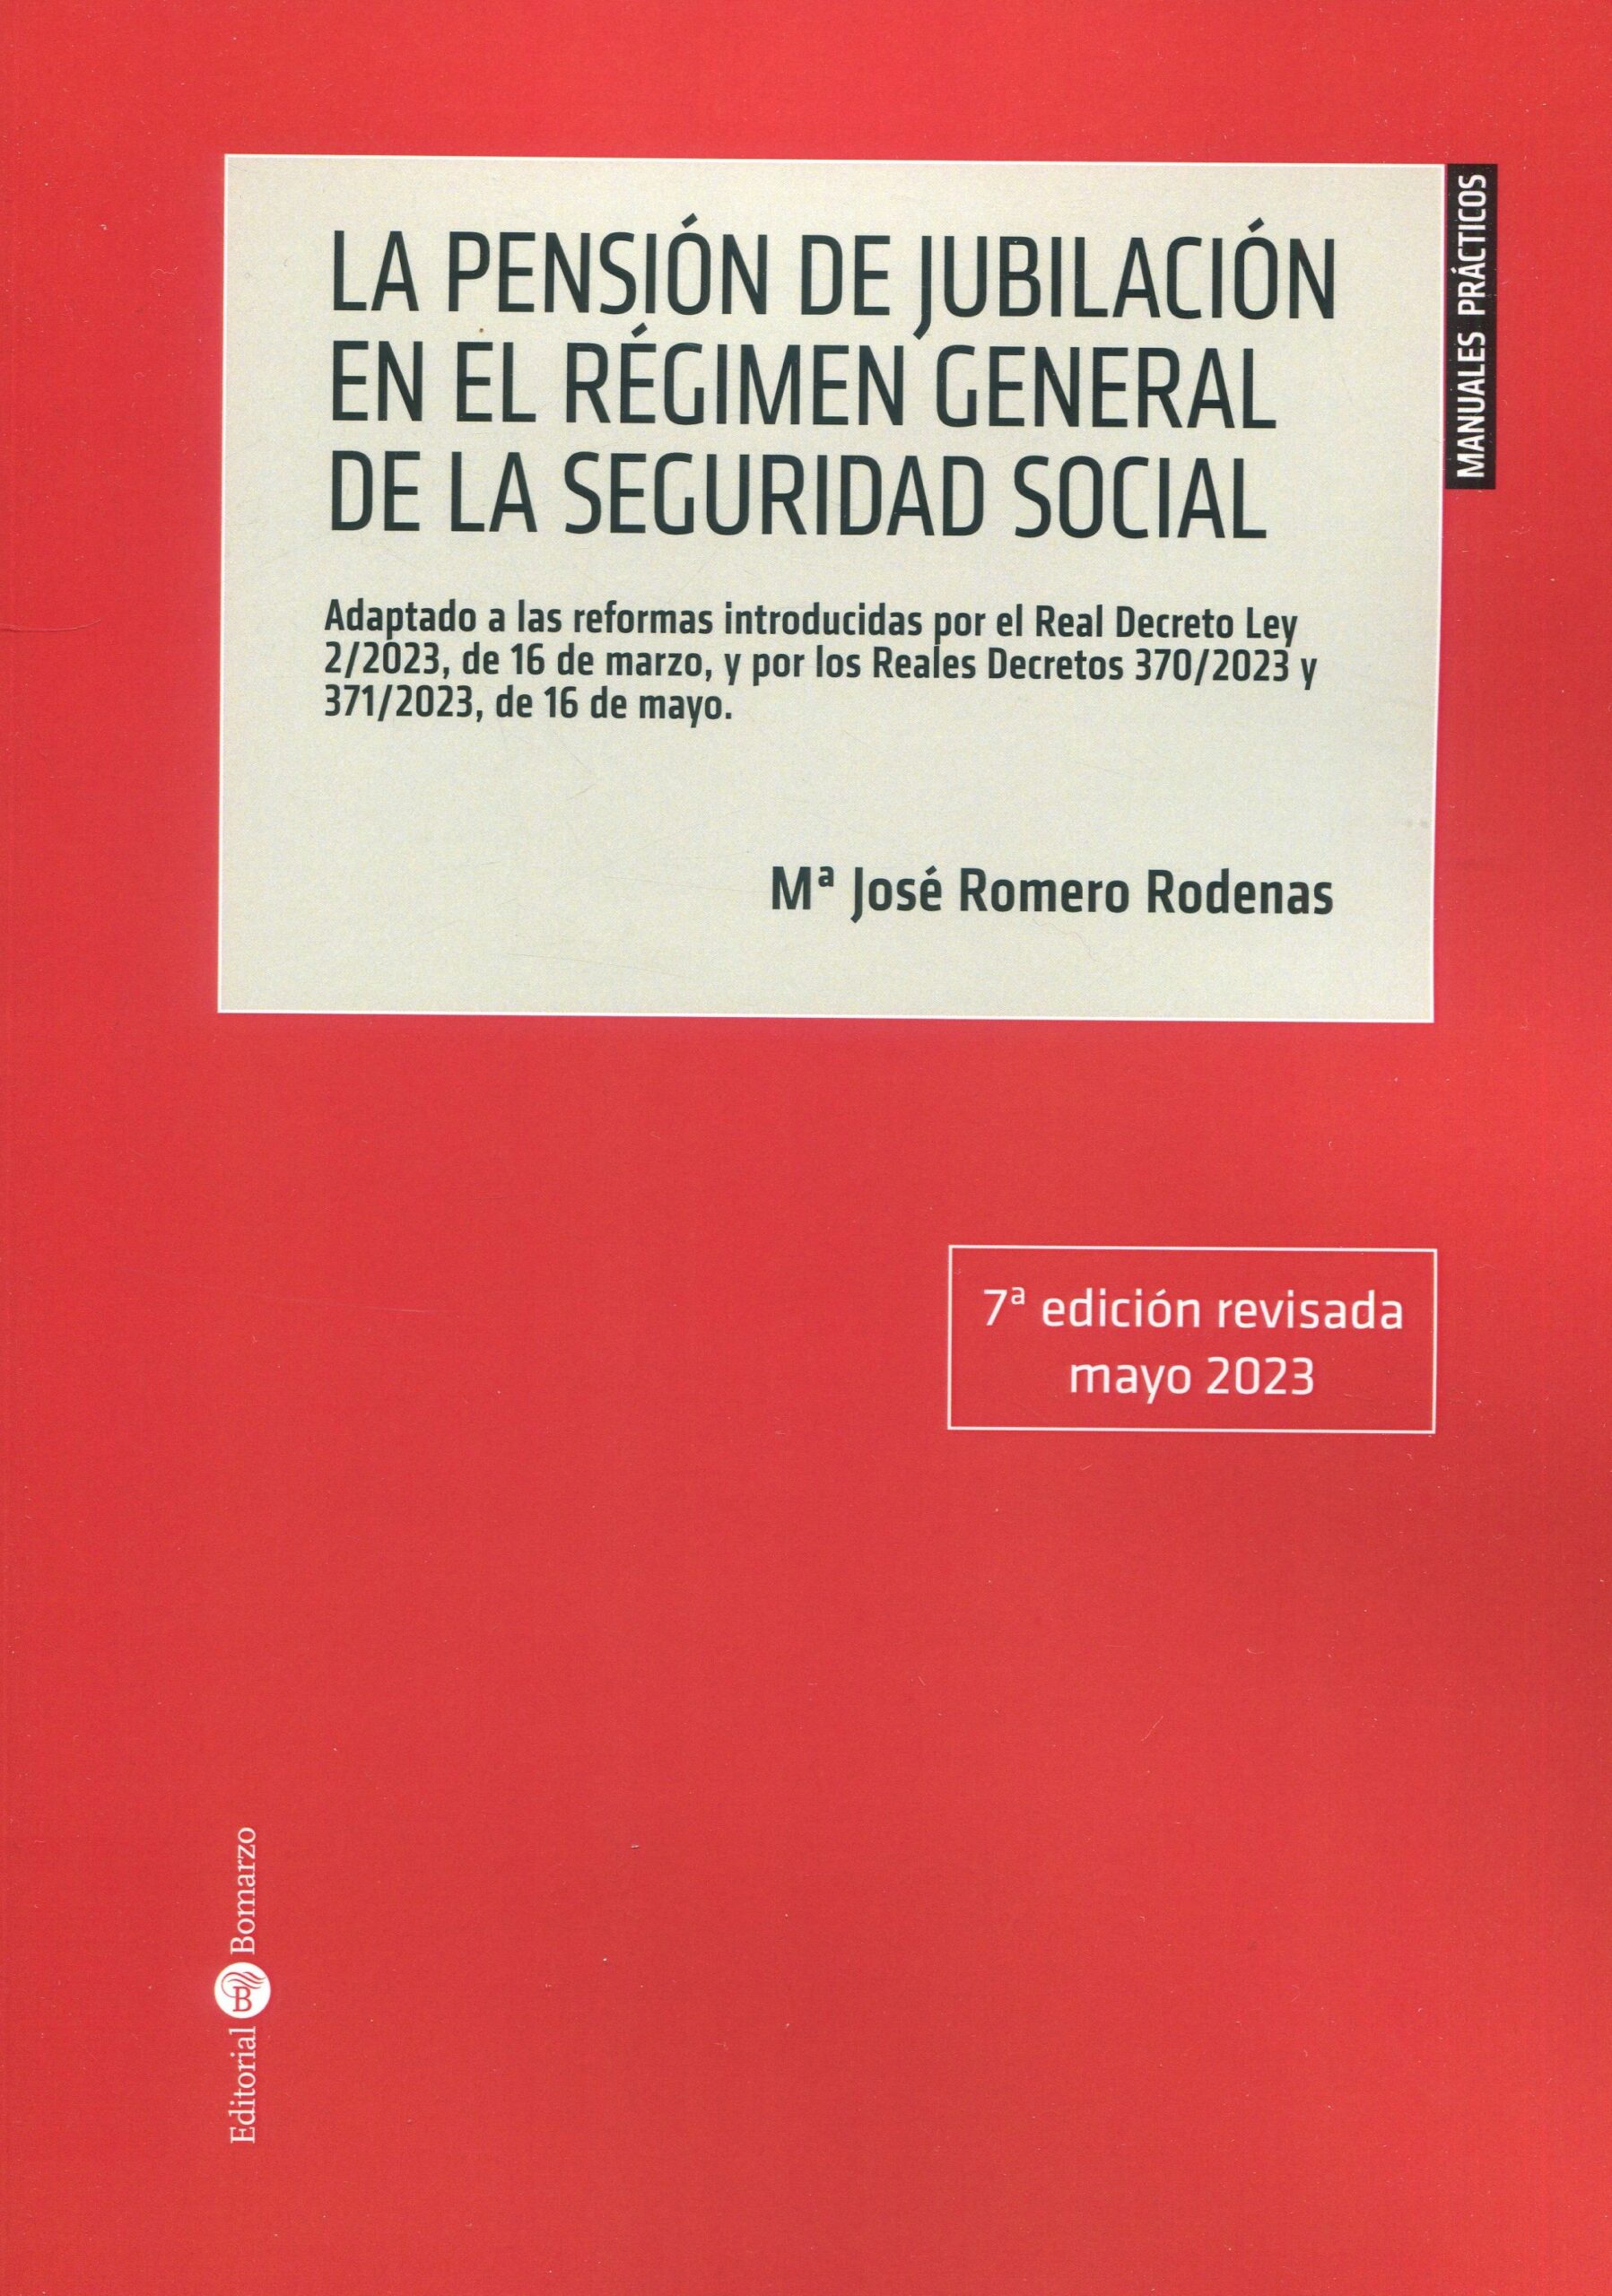 Imagen de portada del libro La pensión de jubilación en el Régimen General de la Seguridad Social